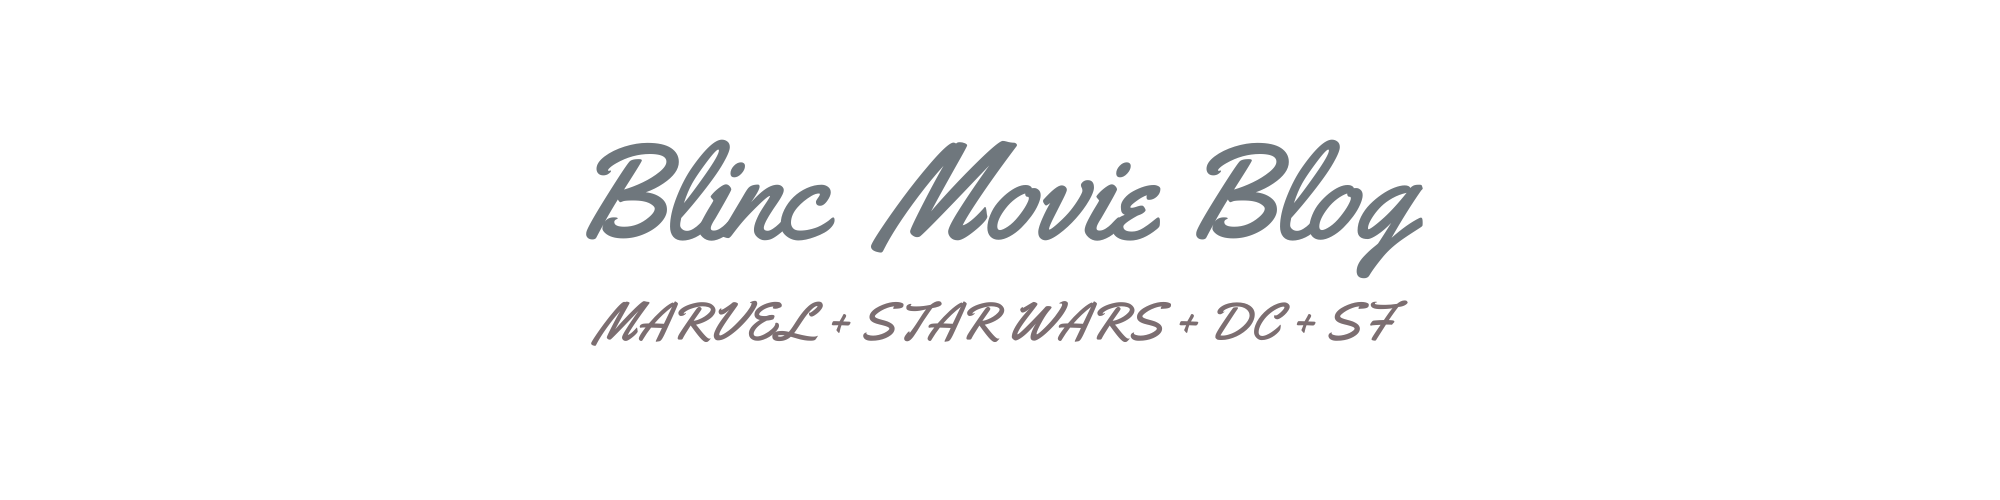 Blinc Movie Blog